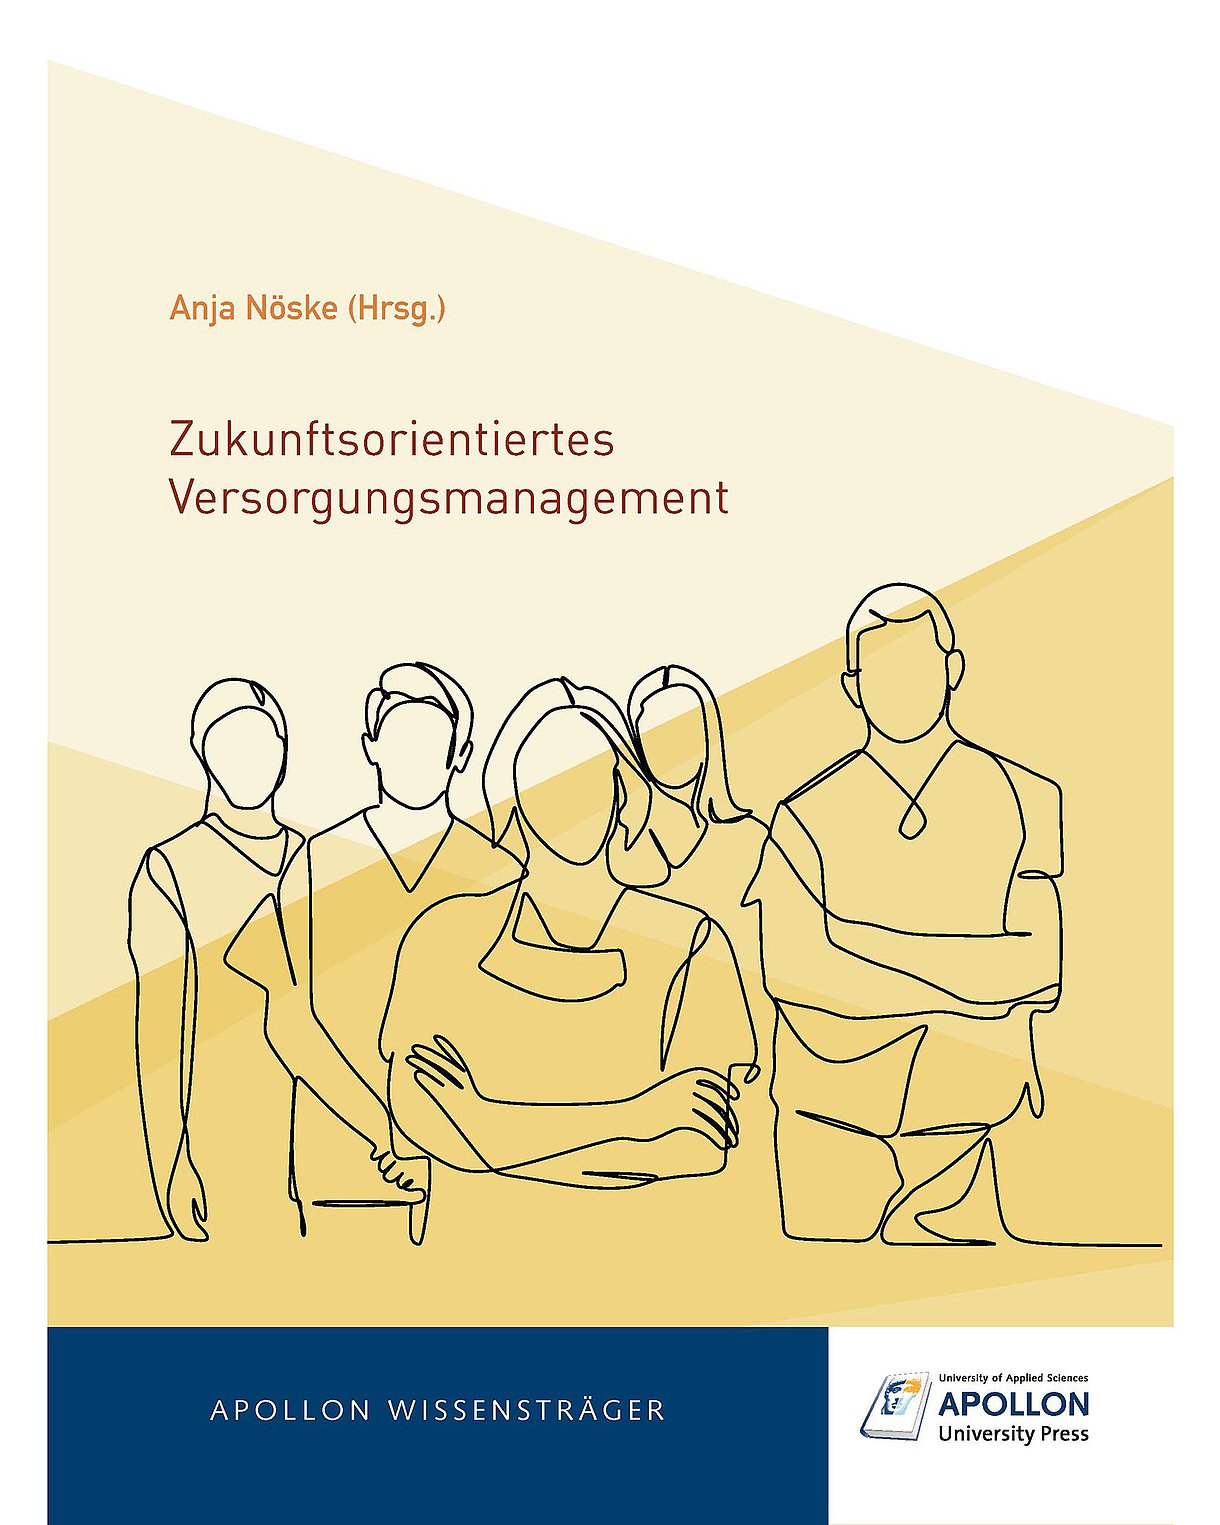 Cover des Buches "Zukunftsorientiertes Versorgungsmanagement" mit menschlichen Silhouetten vor gelbem Hintergrund